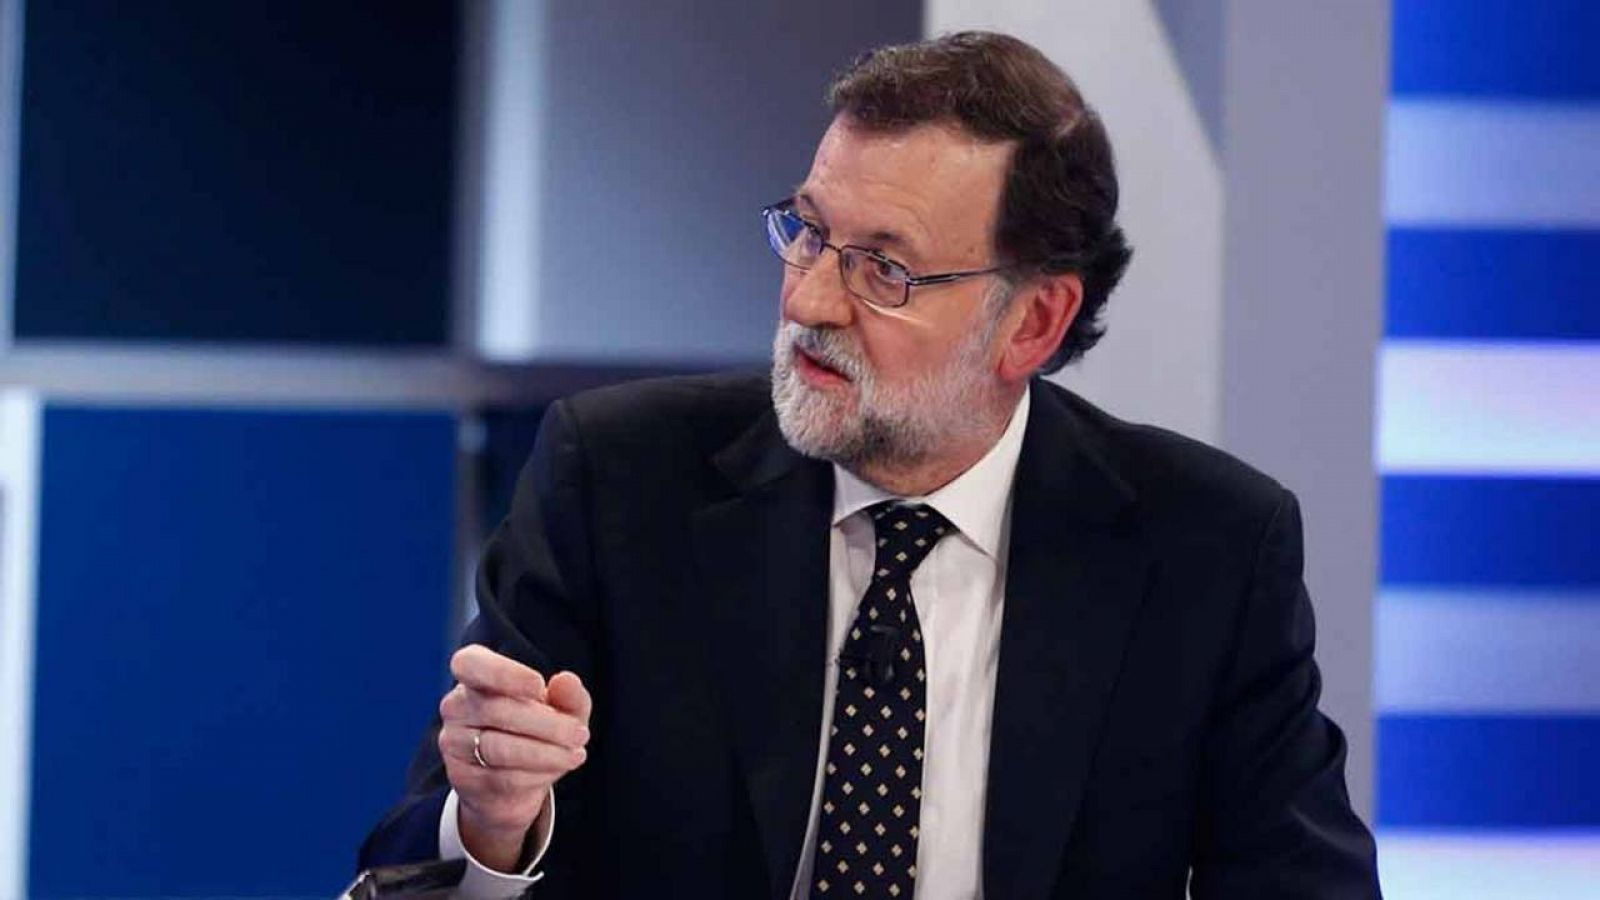 Imagen facilitada por Presidencia del Gobierno, del presidente en funciones, Mariano Rajoy durante la entrevista en 13TV, en Madrid.